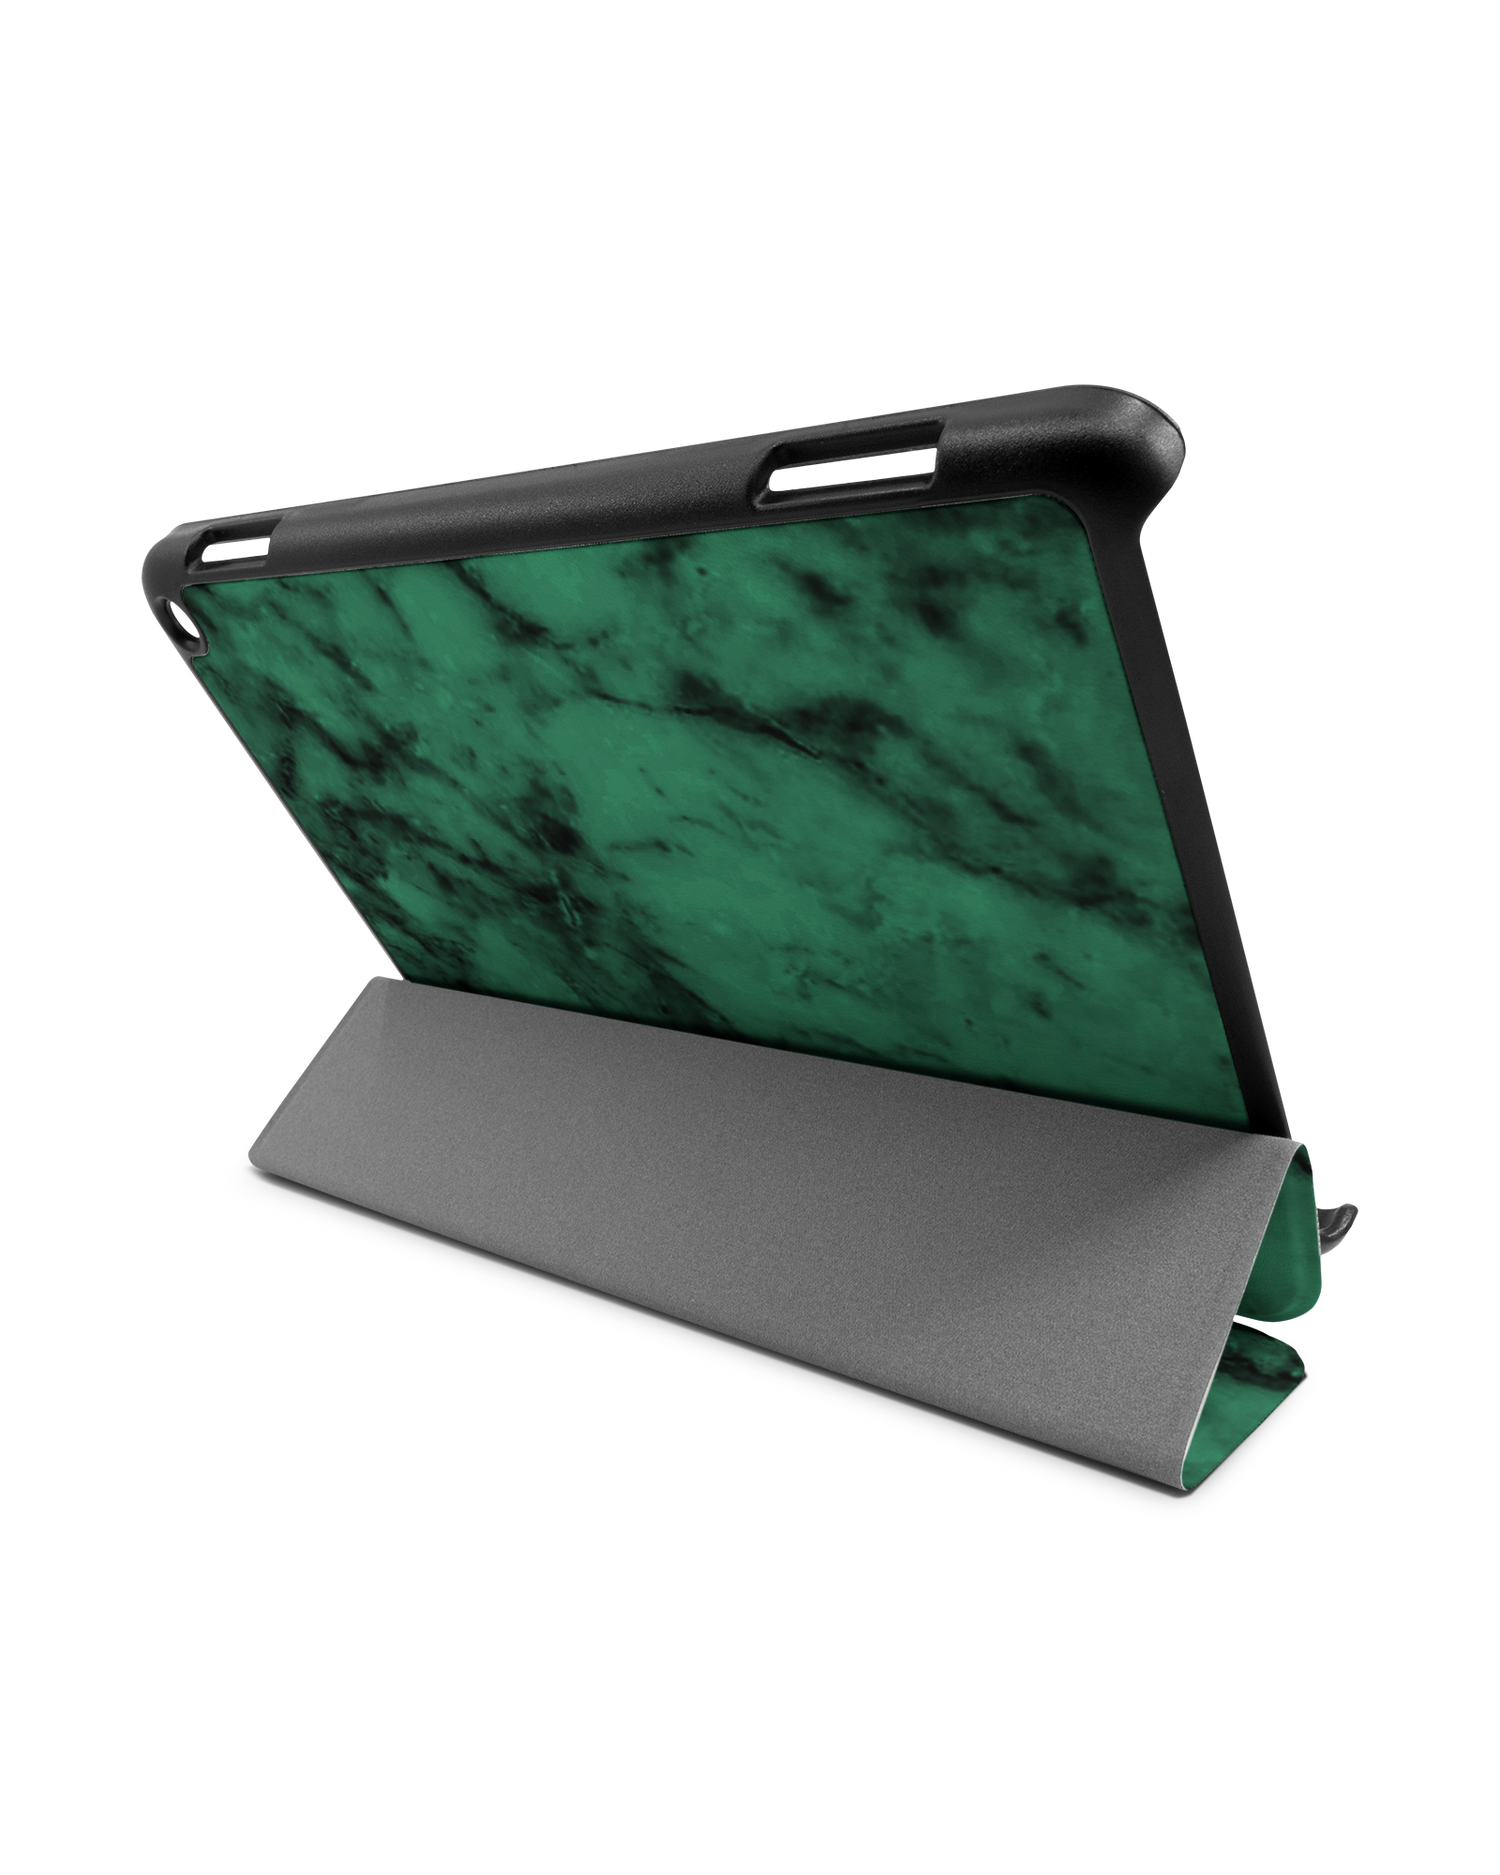 Green Marble Tablet Smart Case für Amazon Fire HD 8 (2022), Amazon Fire HD 8 Plus (2022), Amazon Fire HD 8 (2020), Amazon Fire HD 8 Plus (2020): Aufgestellt im Querformat